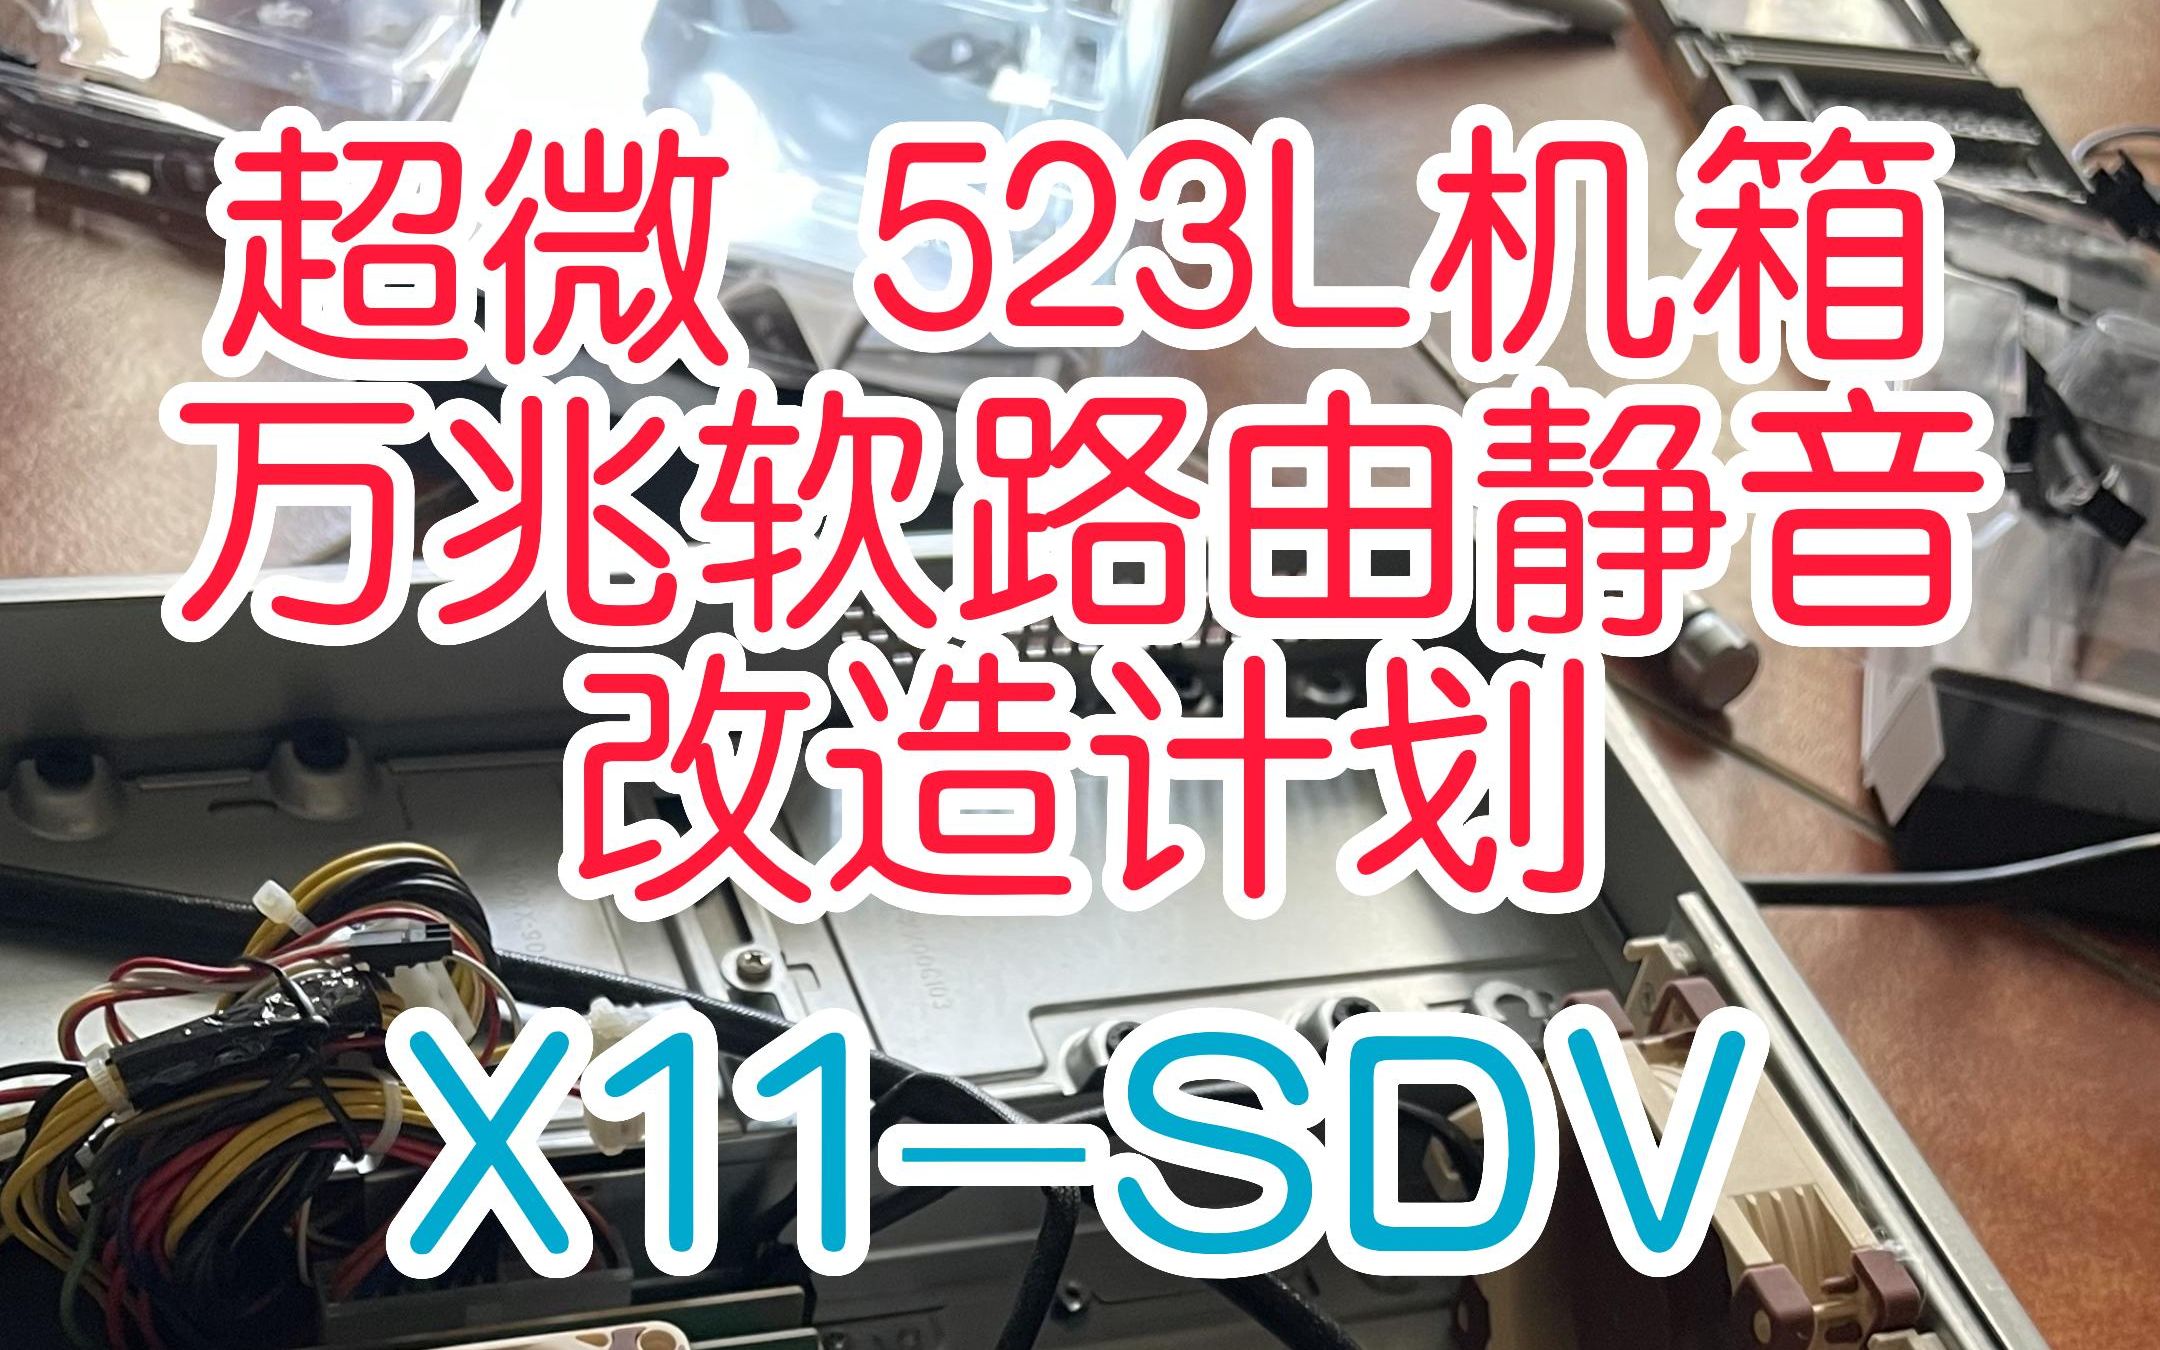 #万兆软路由 超微523L机箱搭配3把猫扇，X11SDV主板进行静音改造，小翻车不算翻车吧？